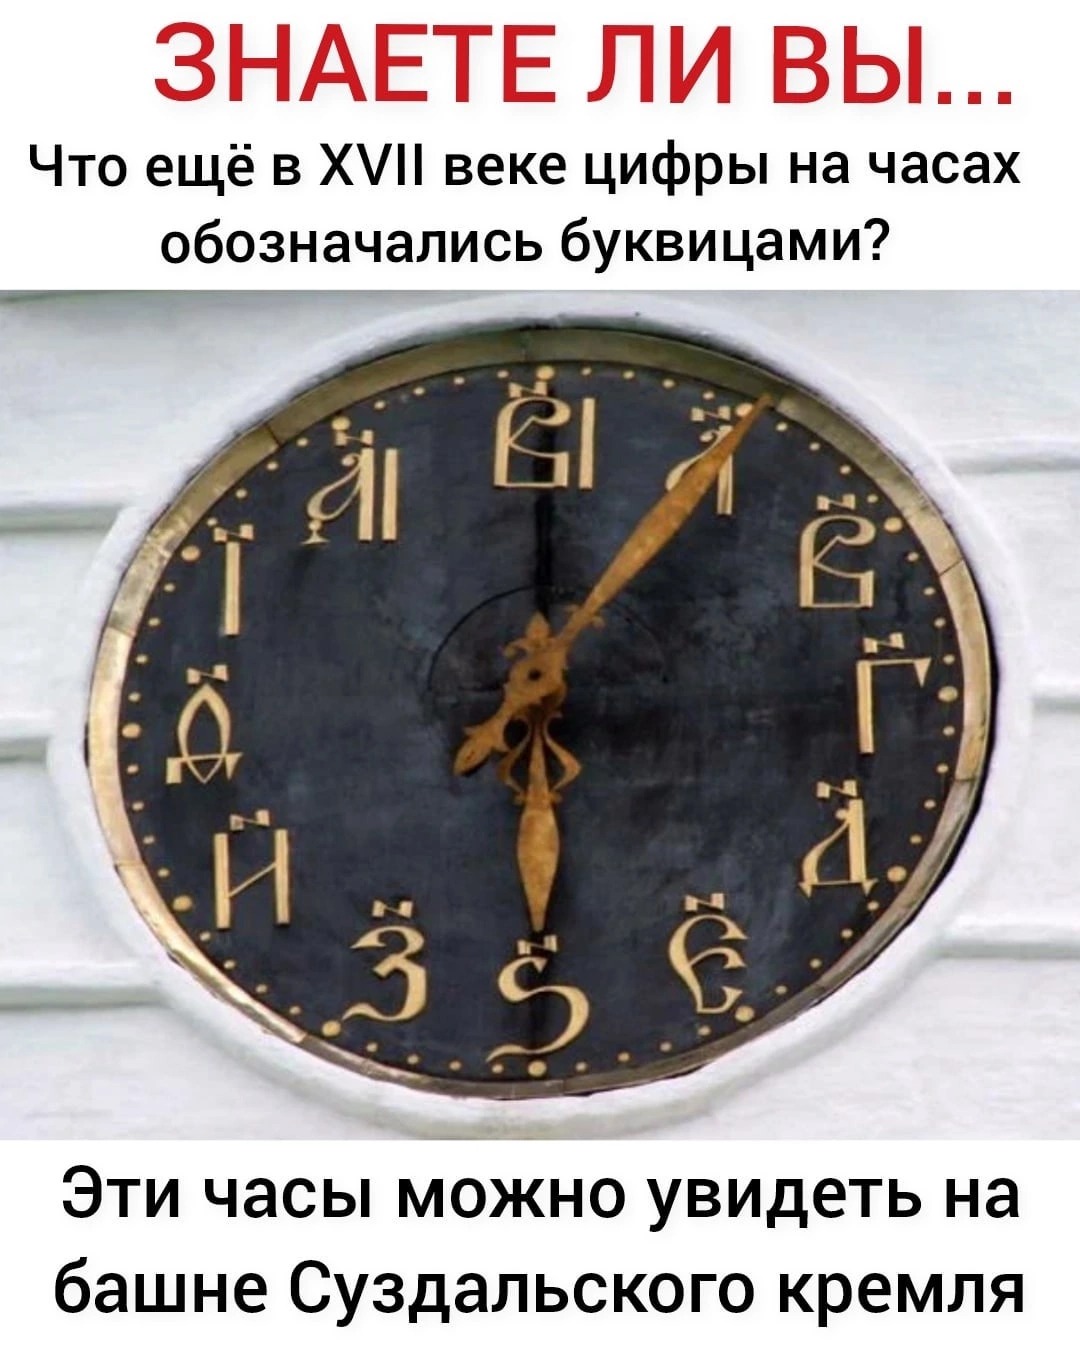 Башенные часы с кириллическими цифрами в Суздале